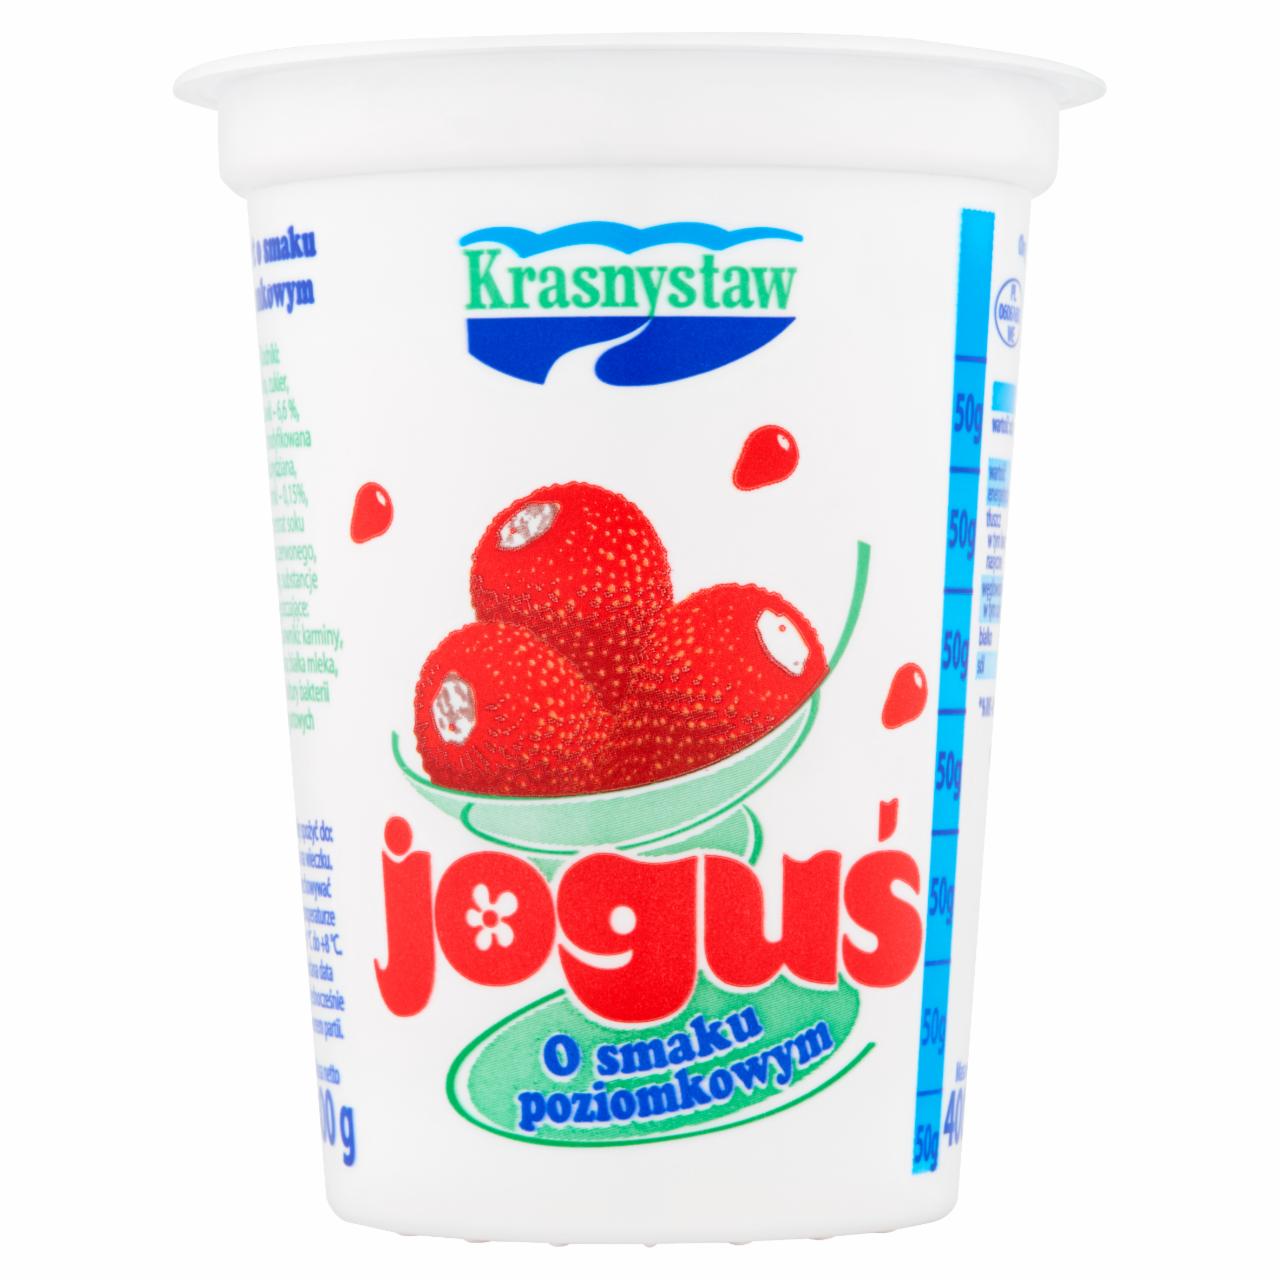 Zdjęcia - Krasnystaw Joguś Jogurt o smaku poziomkowym 400 g